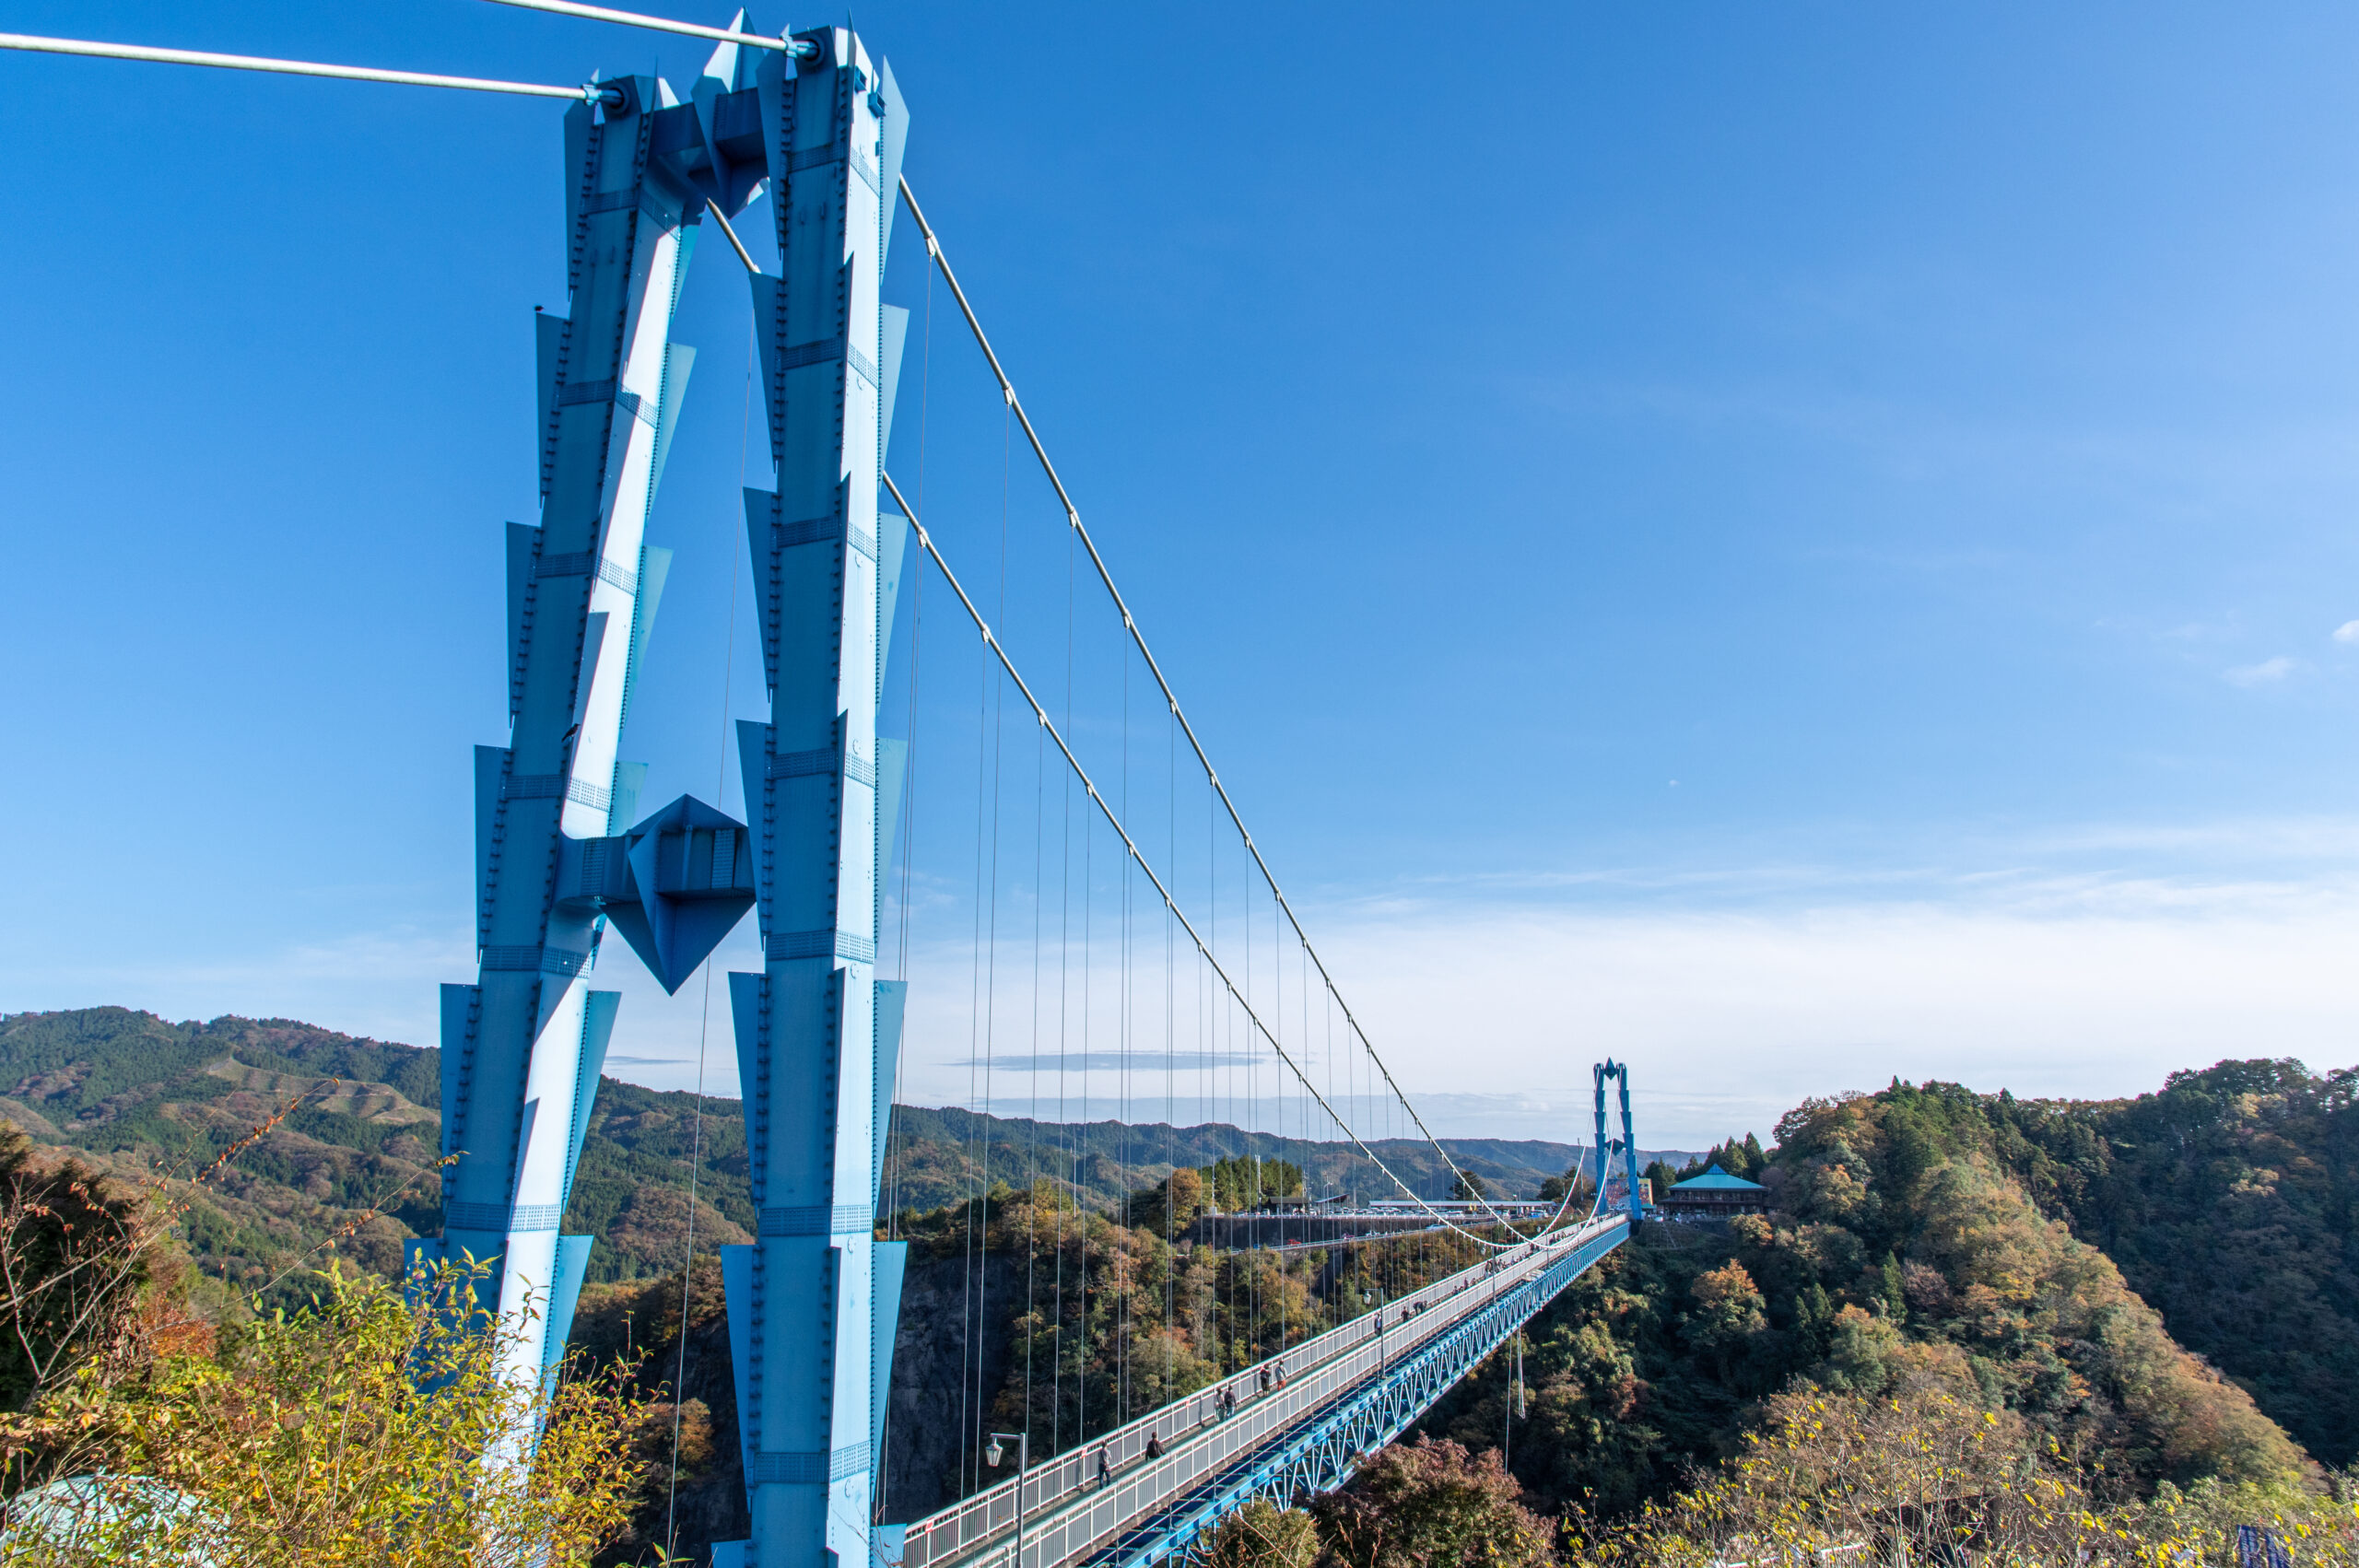 袋田の滝から竜神大吊橋まで行って茨城旅を充実させよう。茨城県の竜神大吊橋への行き方。